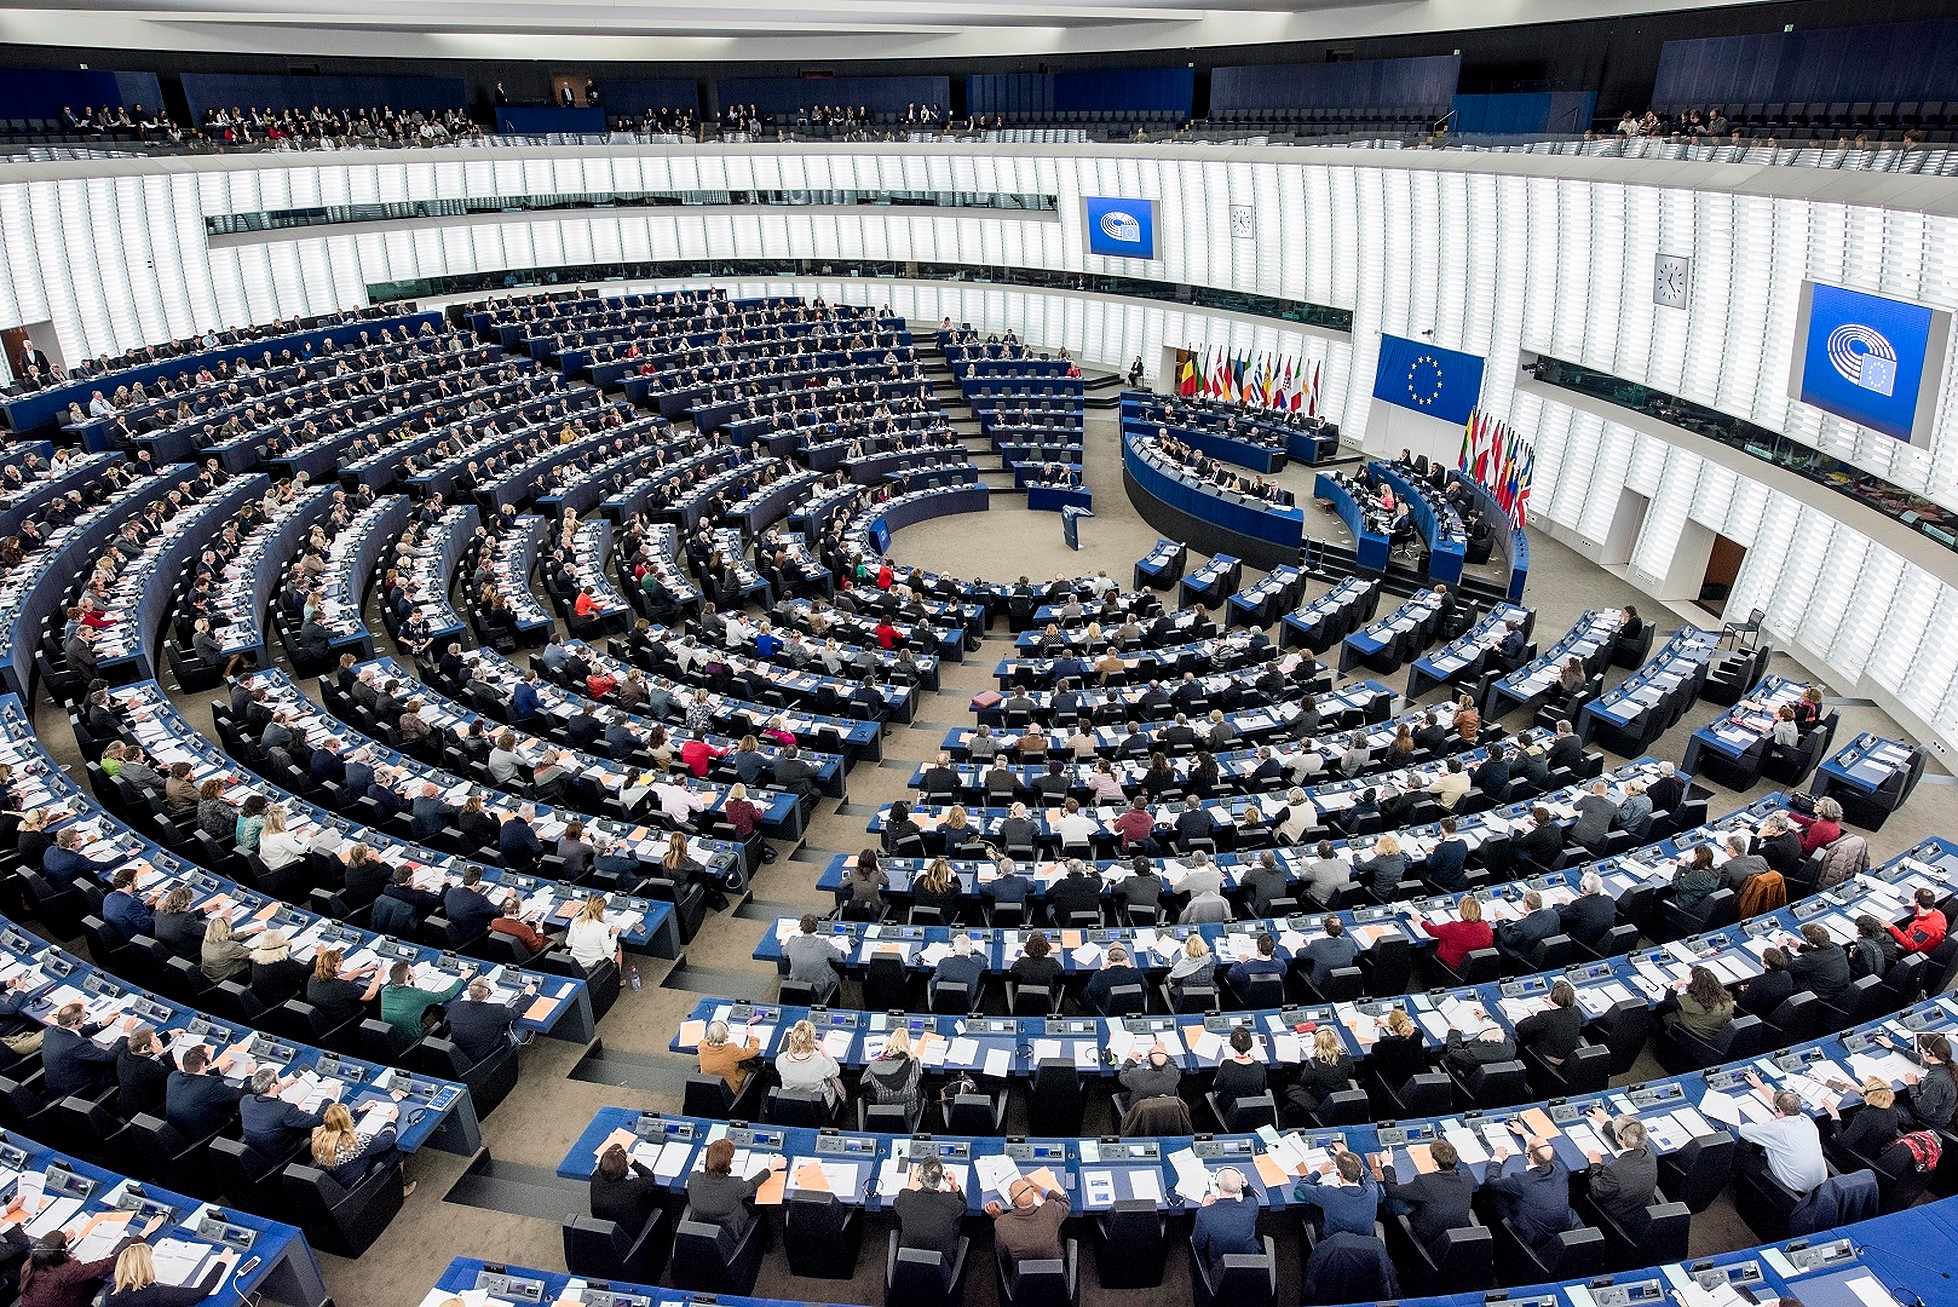 Parlamentul European. Combinate, grupurile politice de dreapta, socialiști și centriști își păstrează majoritatea